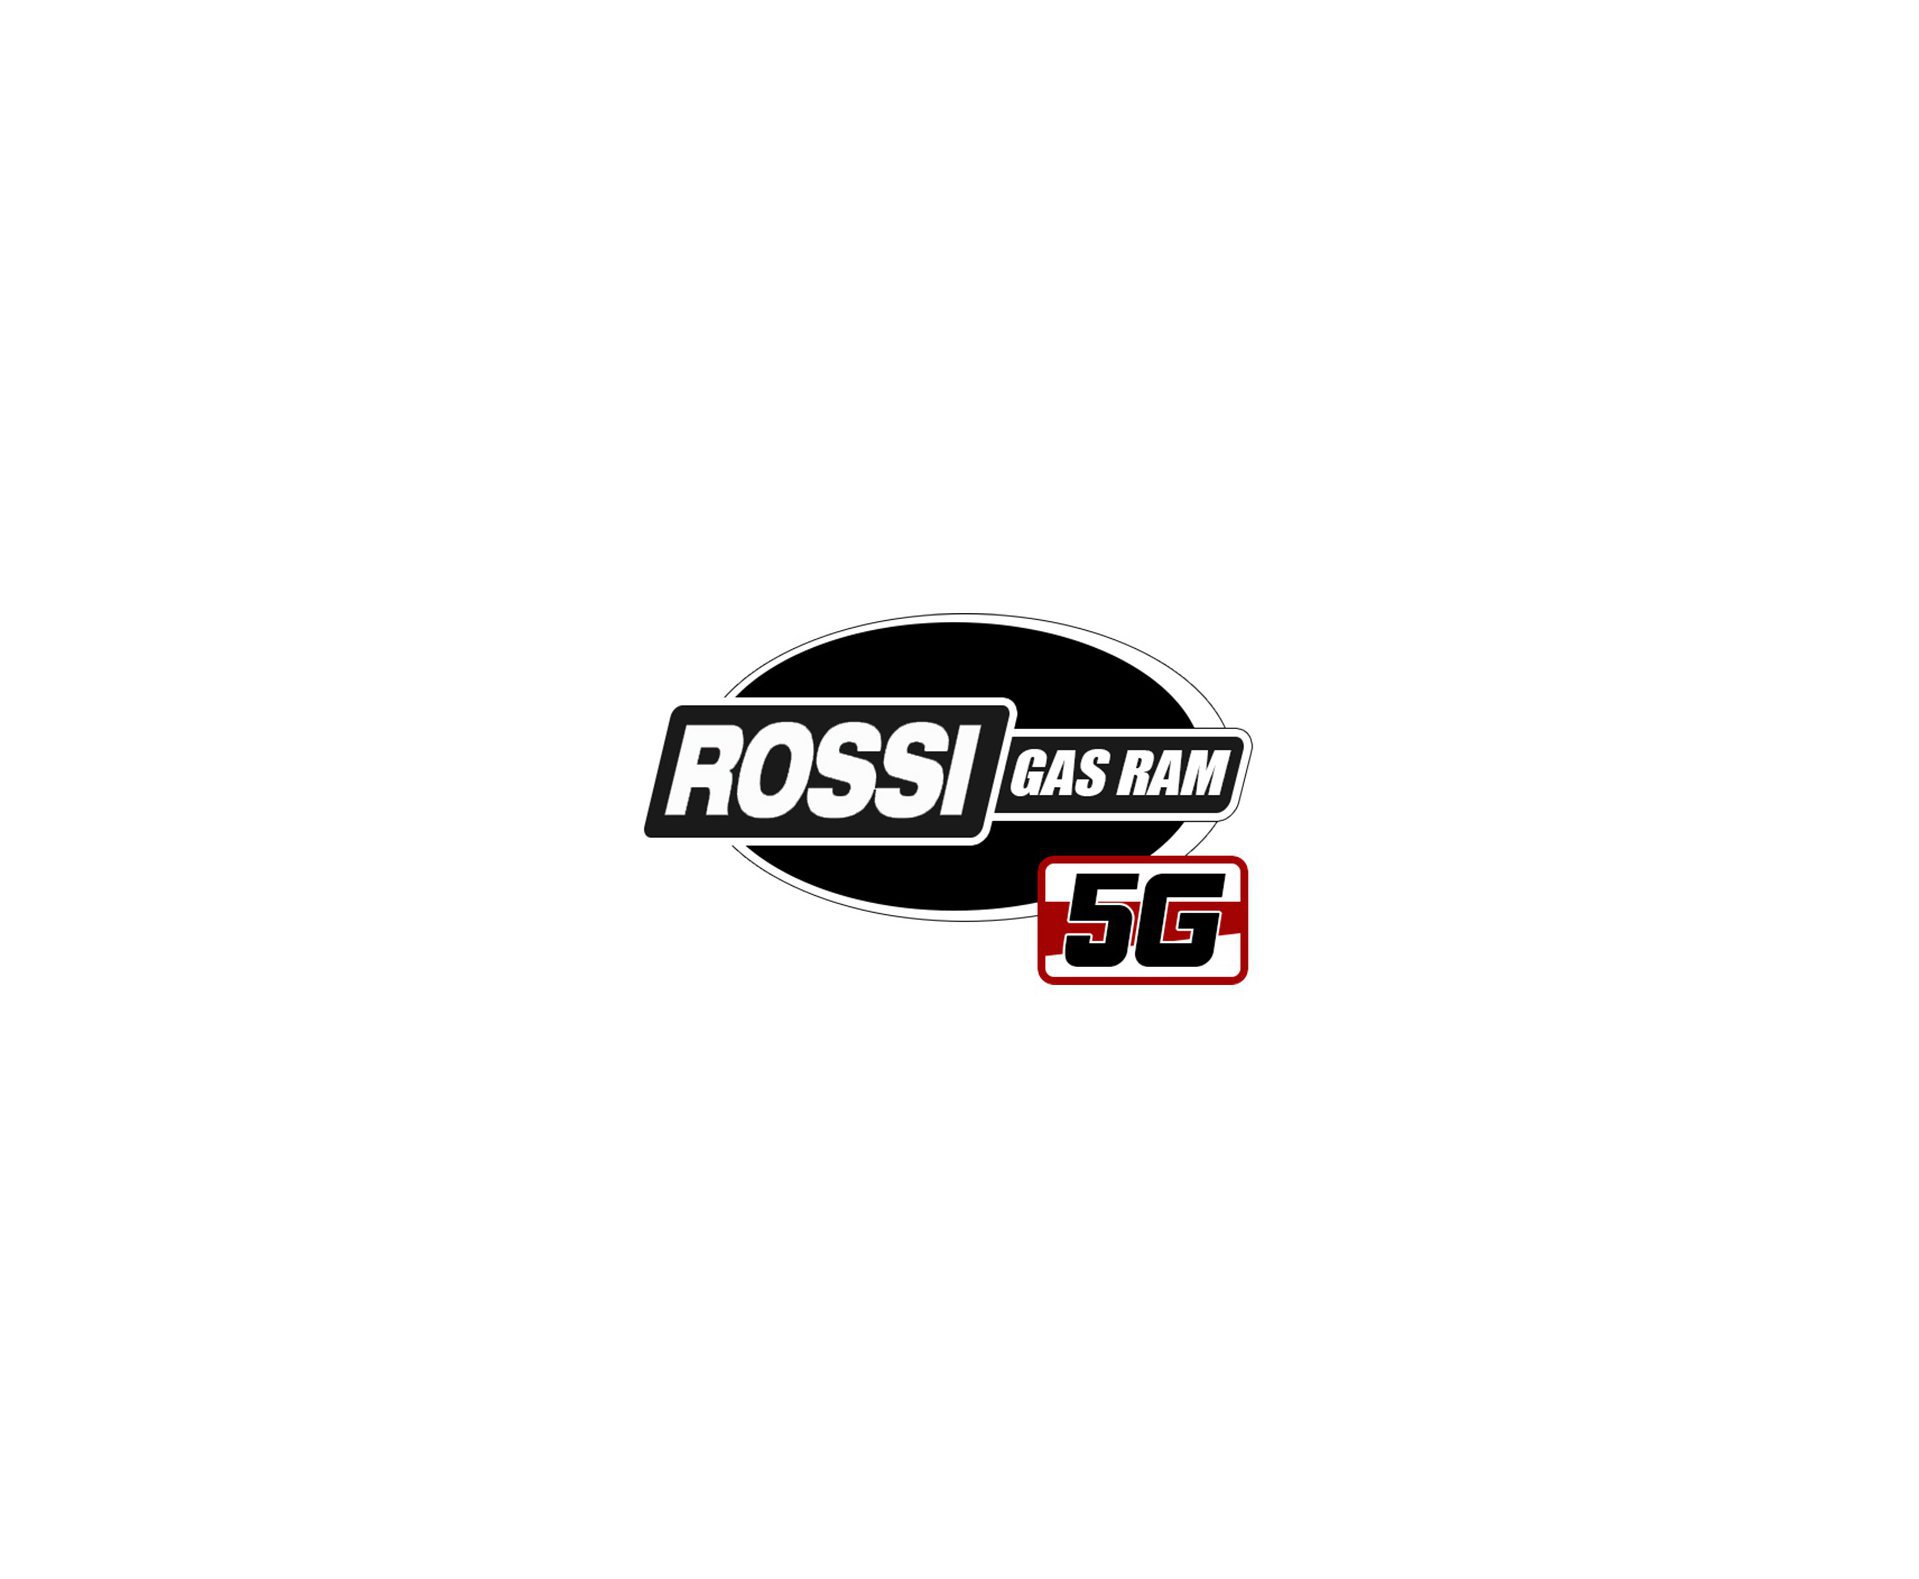 Carabina de Pressão Rossi Dione 5G Gás Ram 60kg 5,5mm + Bandoleira + 03 Caixas de chumbinho + Alvos + Capa + Kamuff